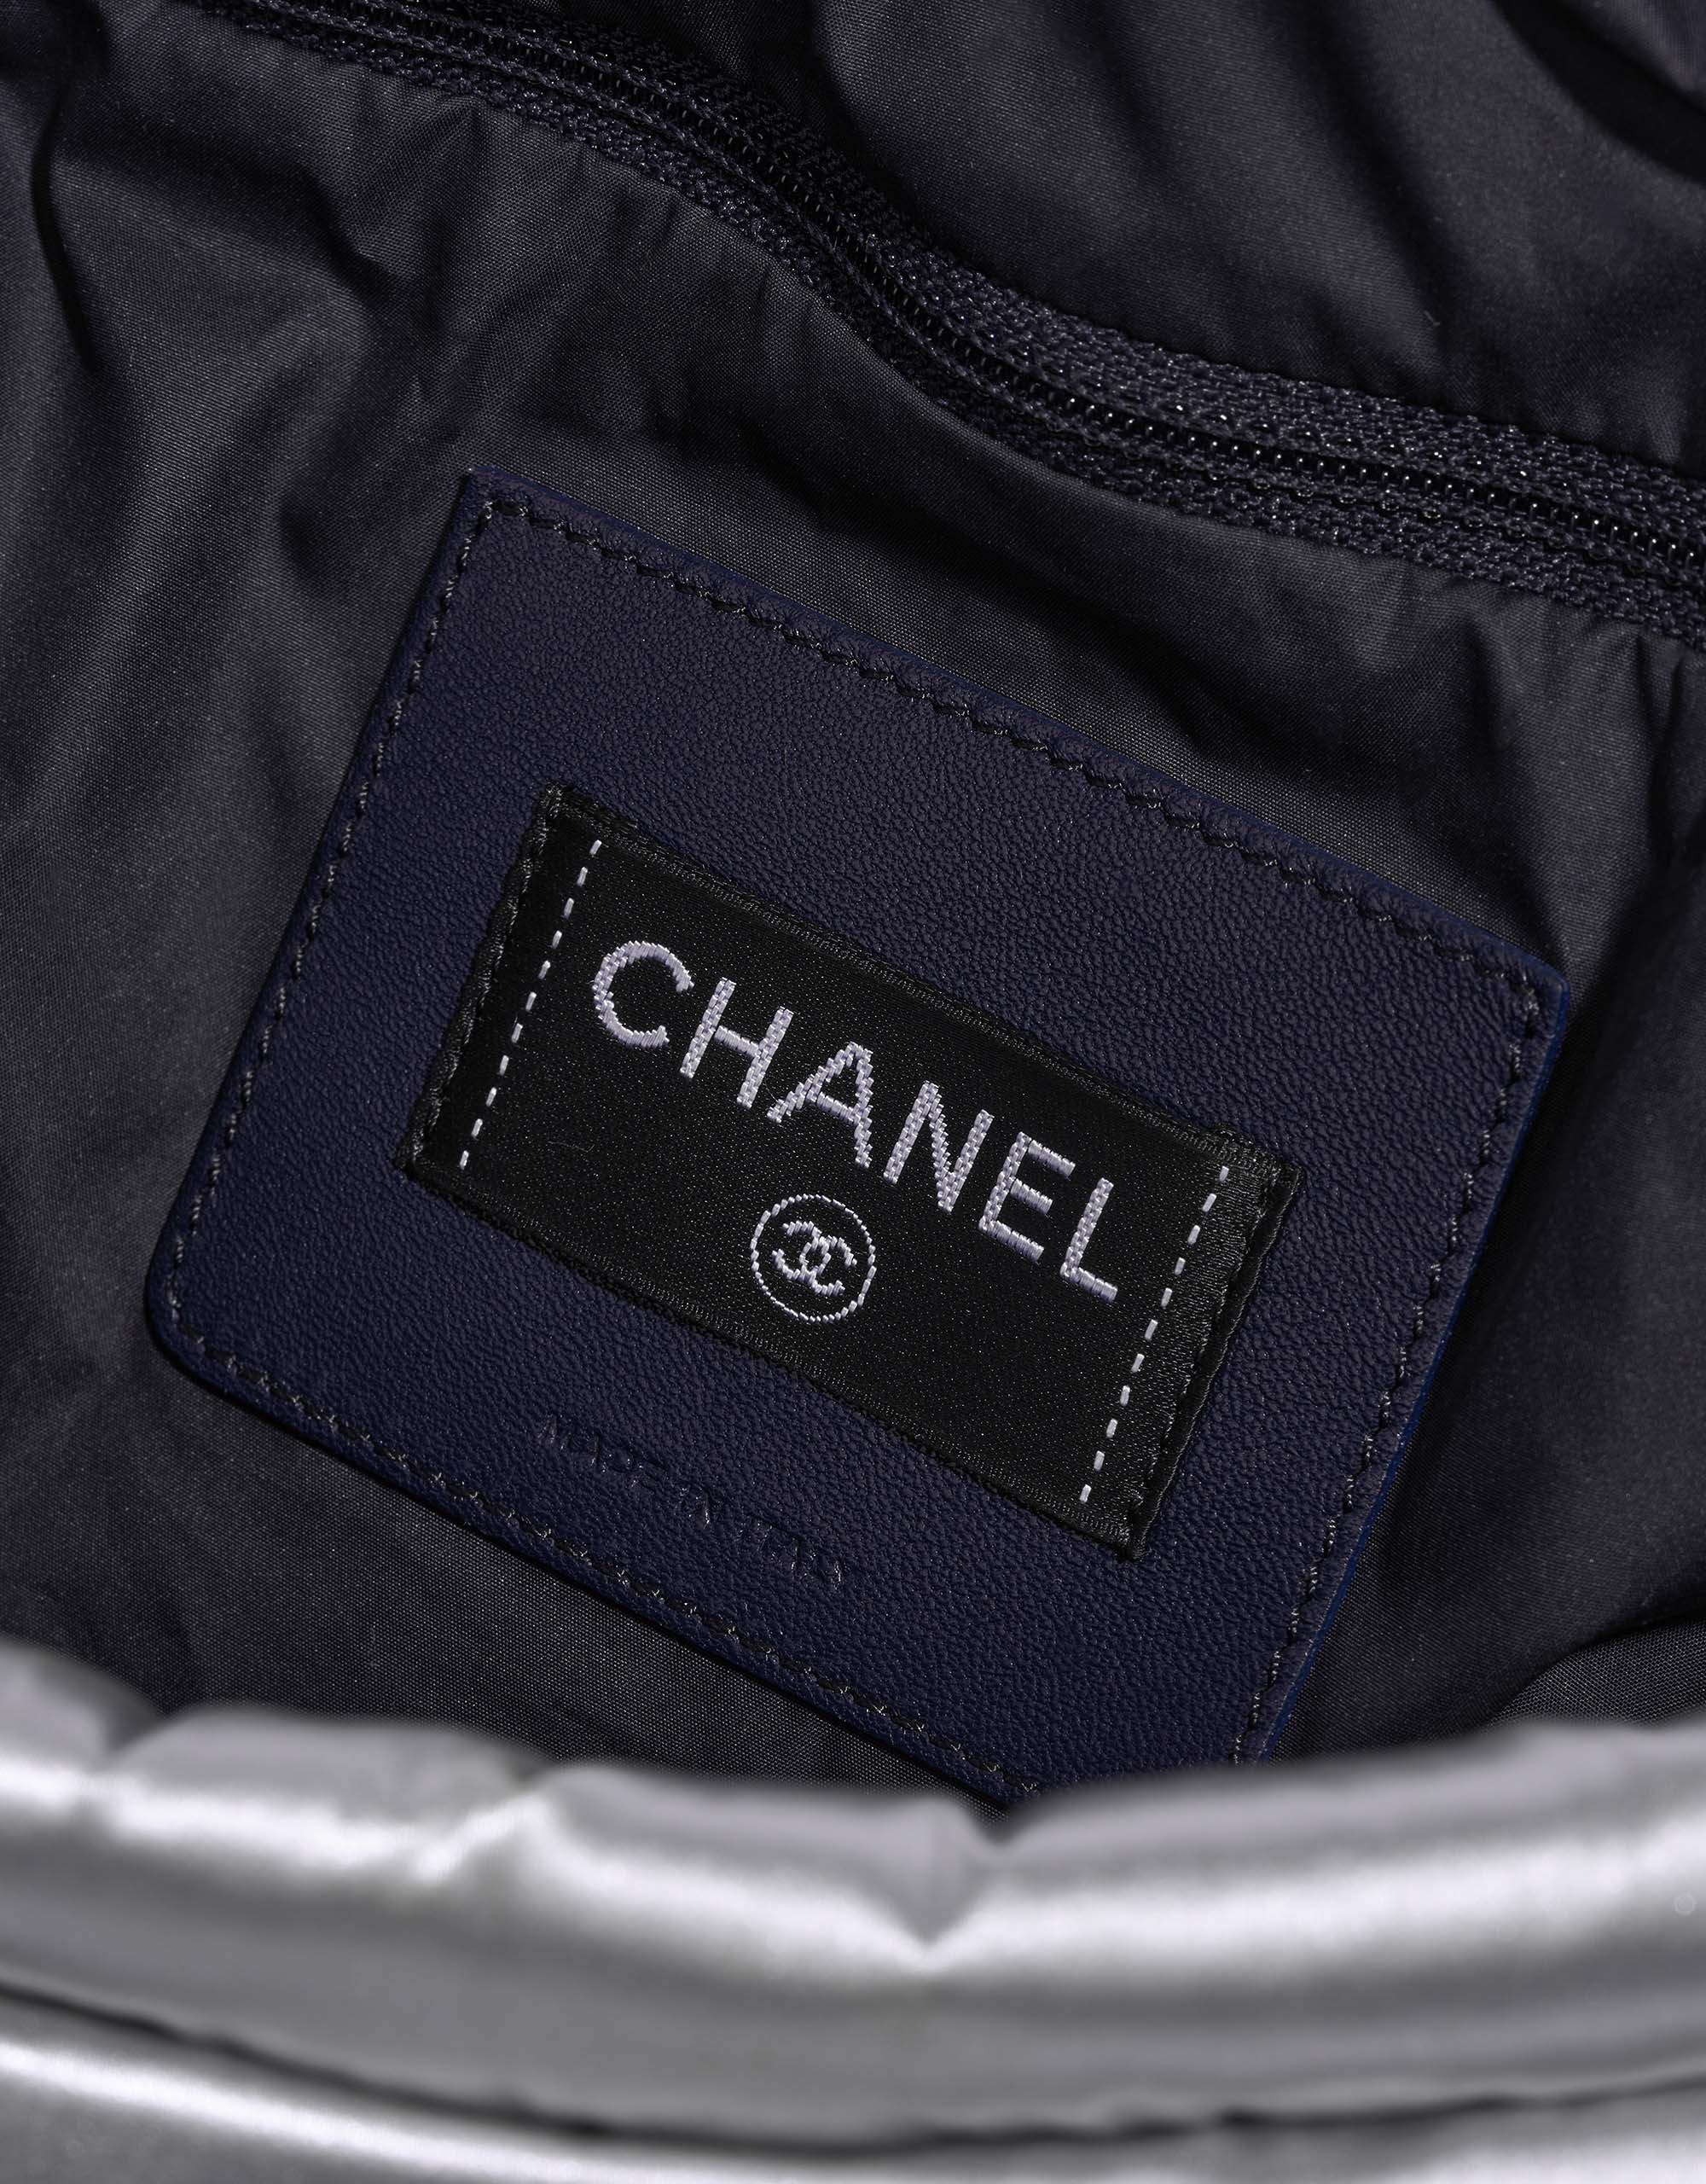 Chanel ShoppingTote Silver Logo | Verkaufen Sie Ihre Designertasche auf Saclab.com